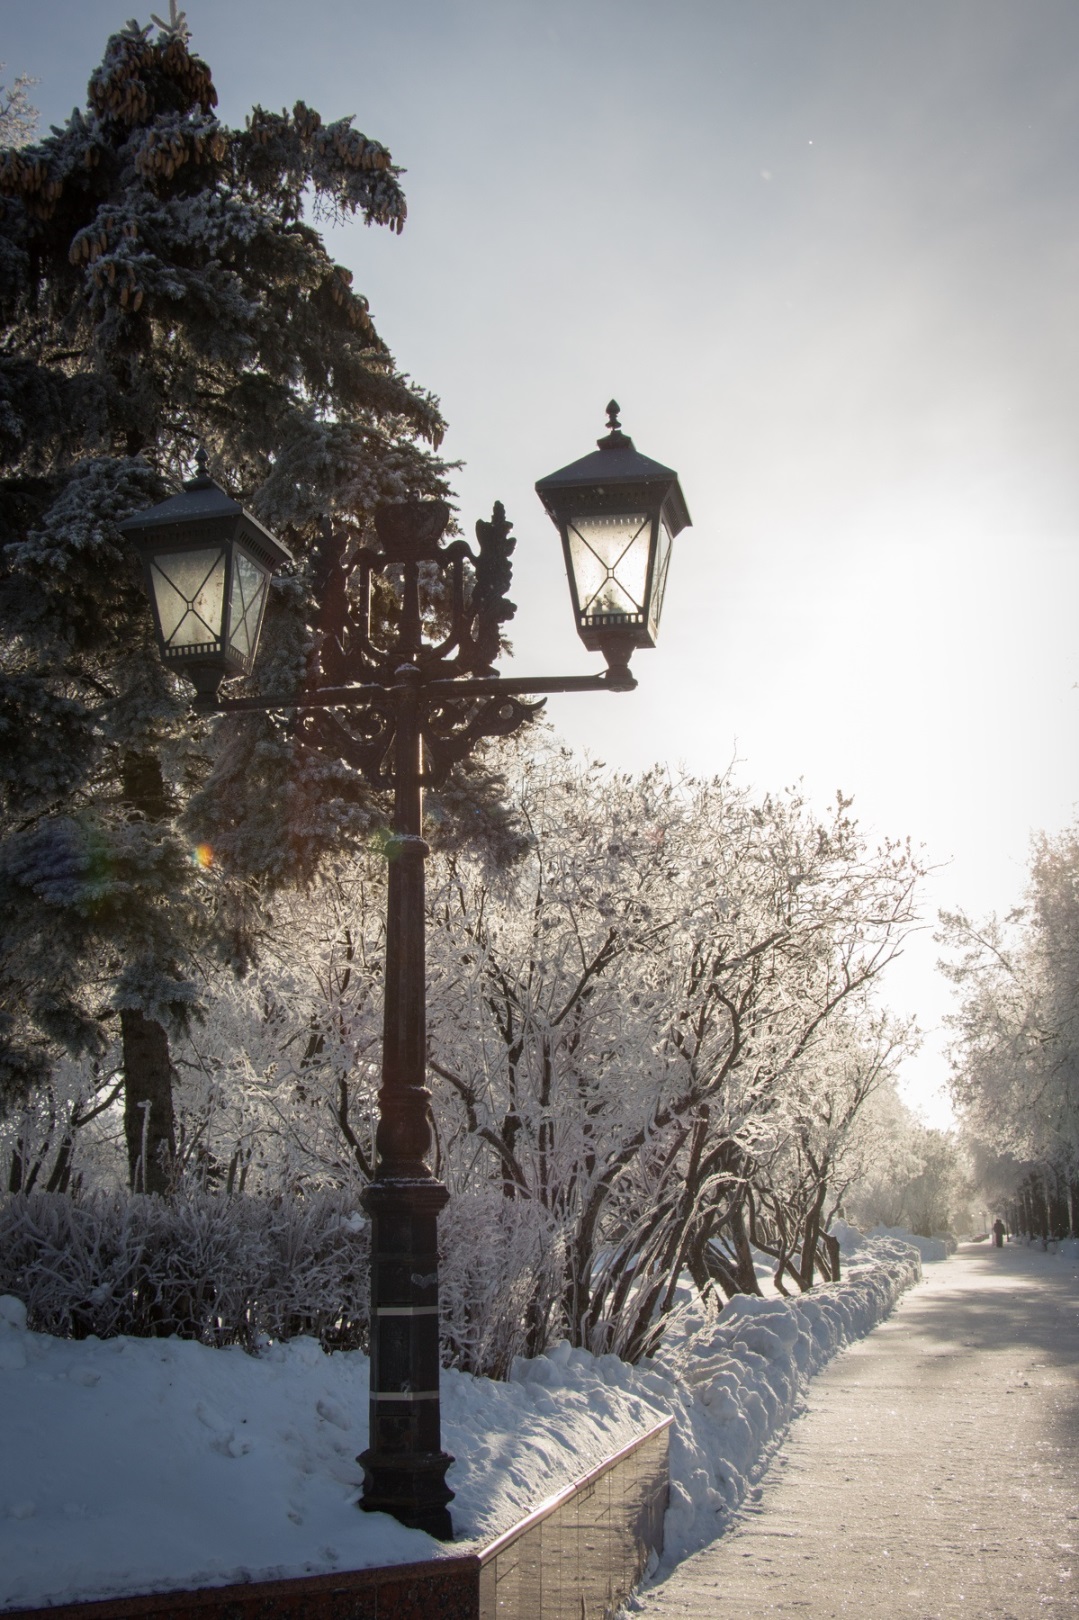 Инди ульяновск. Солнечная зима в городе. Одинокий фонарь зимой. Солнечный зимний день в городе фото. Ажурный фонарь ф зимнем парке.